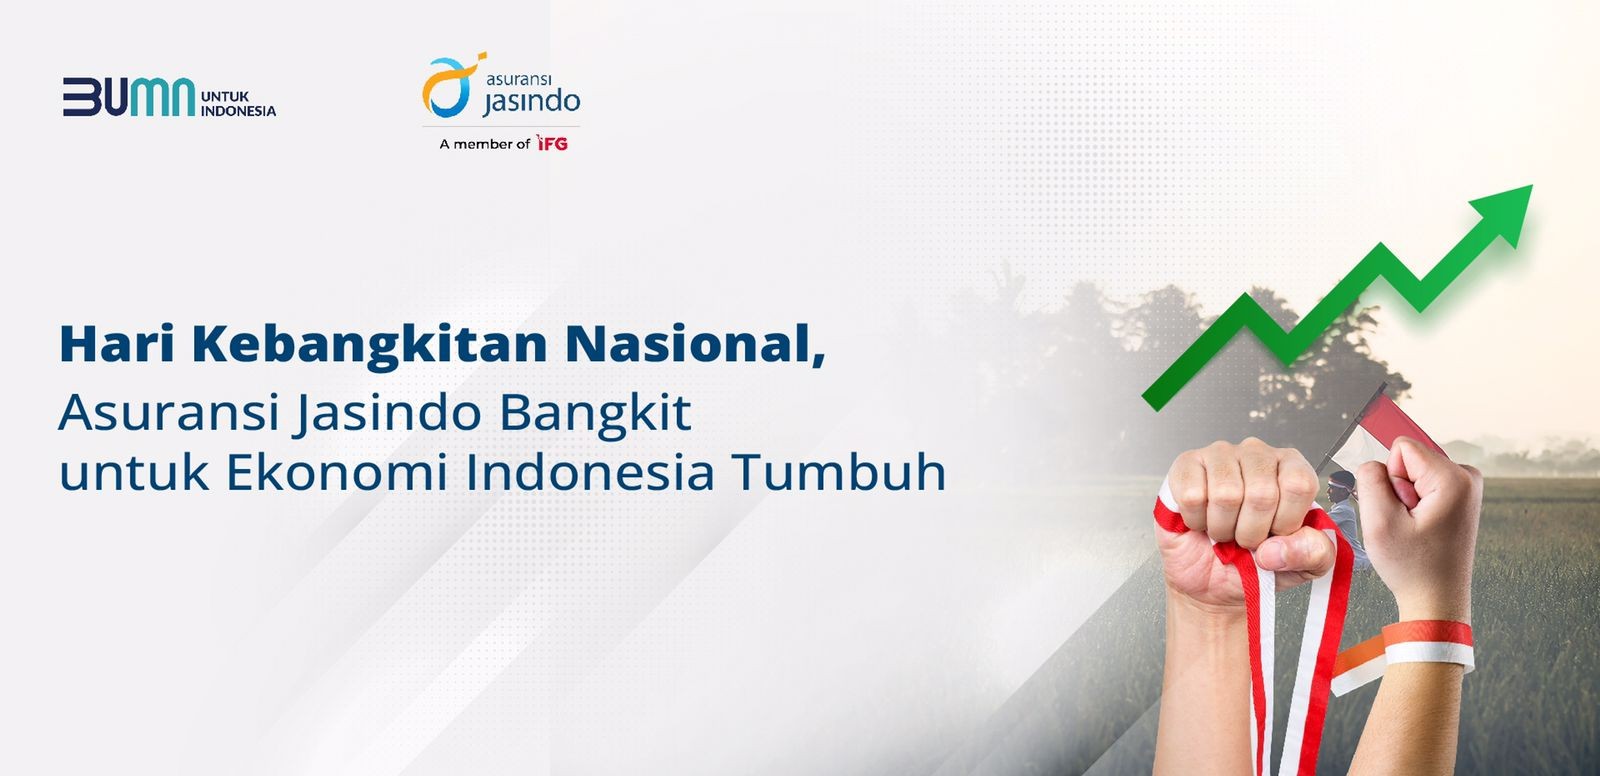 Hari Kebangkitan Nasional, Asuransi Jasindo Bangkit untuk Ekonomi Indonesia Tumbuh